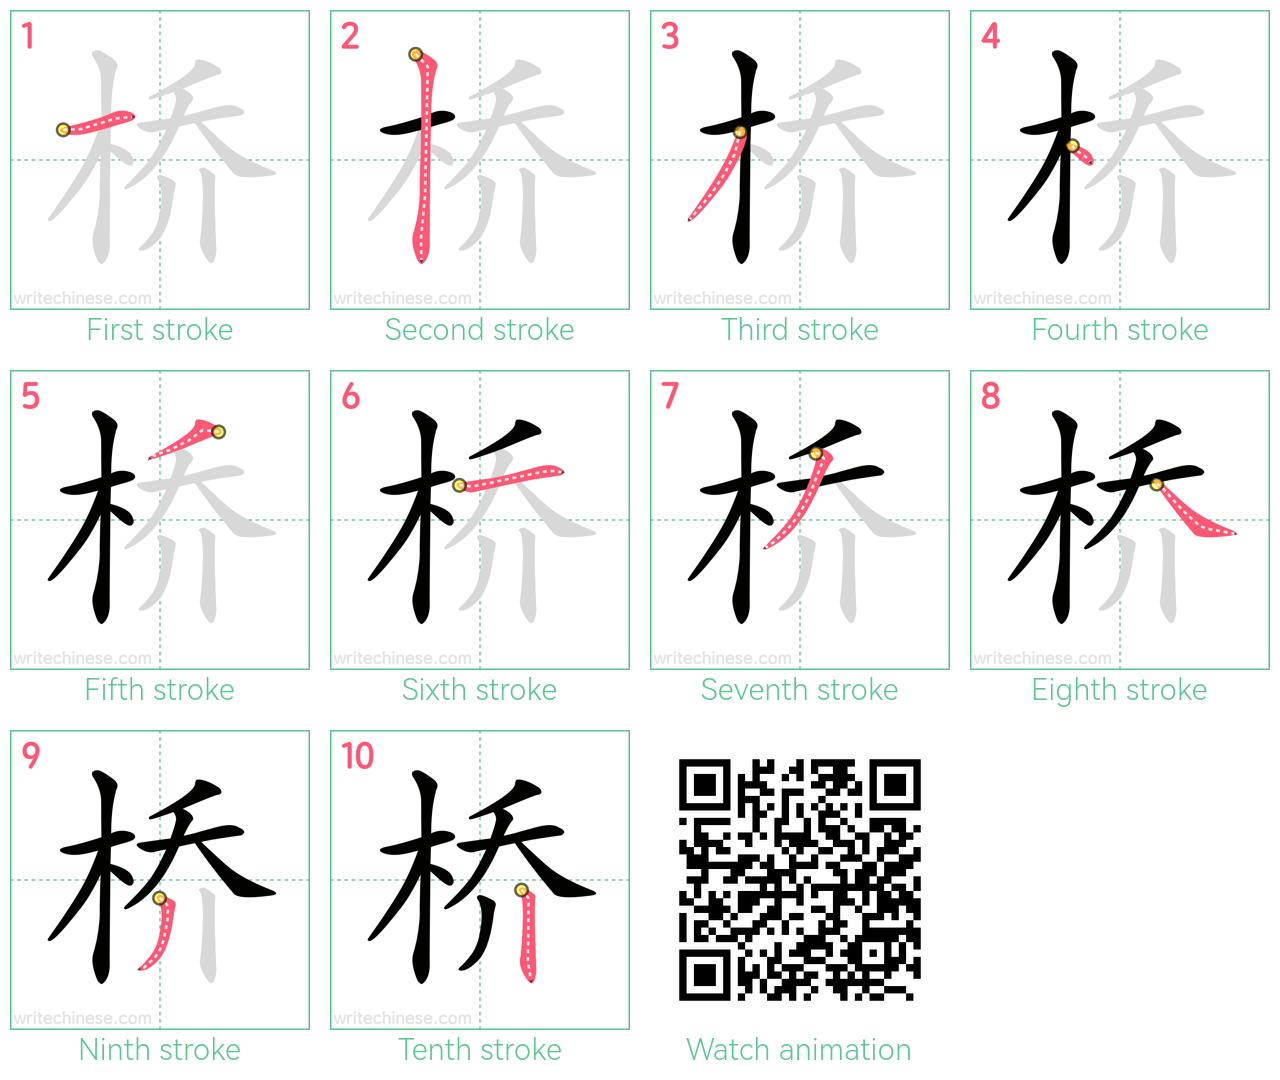 桥 step-by-step stroke order diagrams